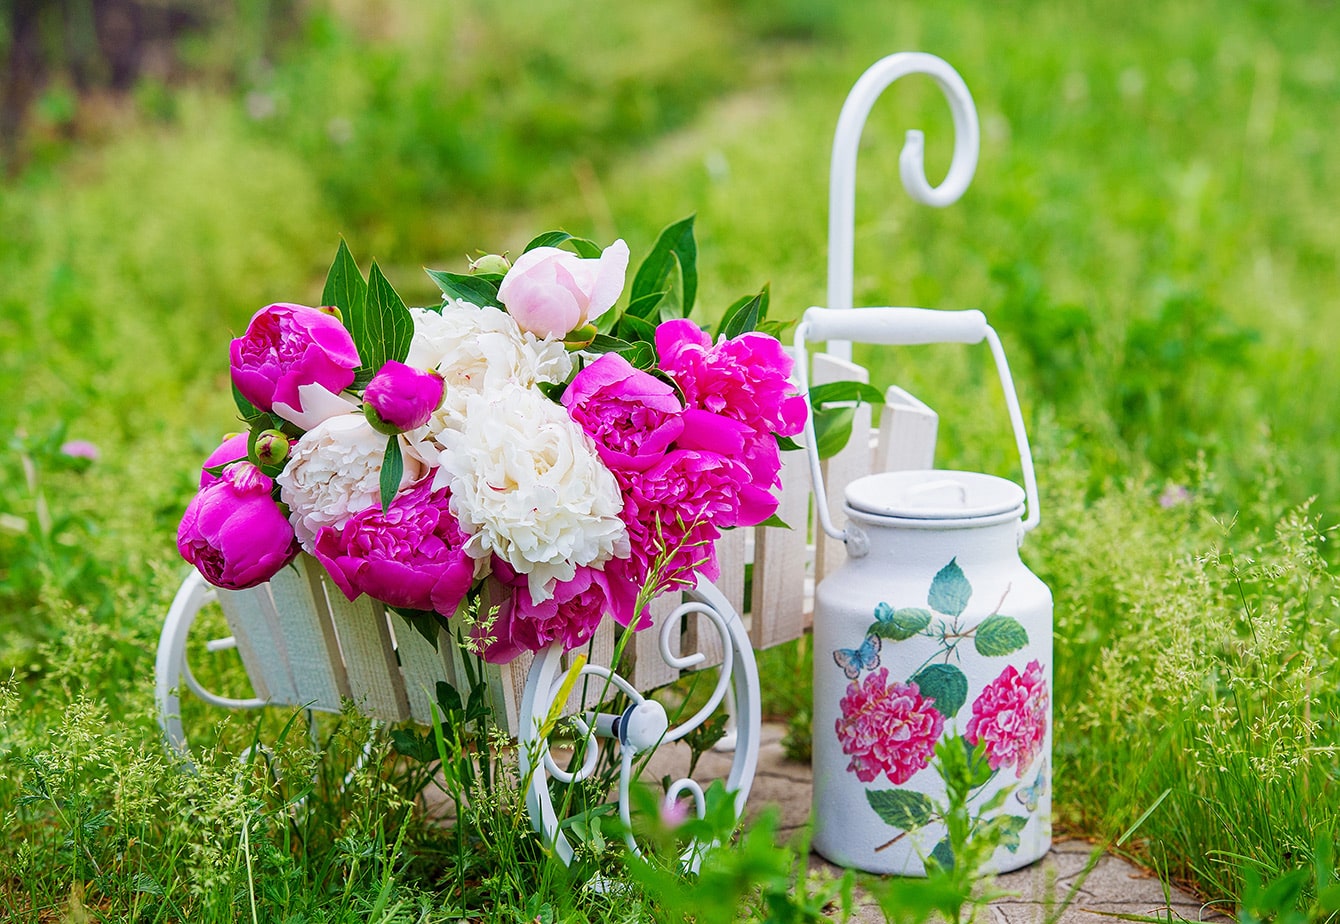 Garten im Vintage-Stil - schöne Ideen für Deko und Blumen